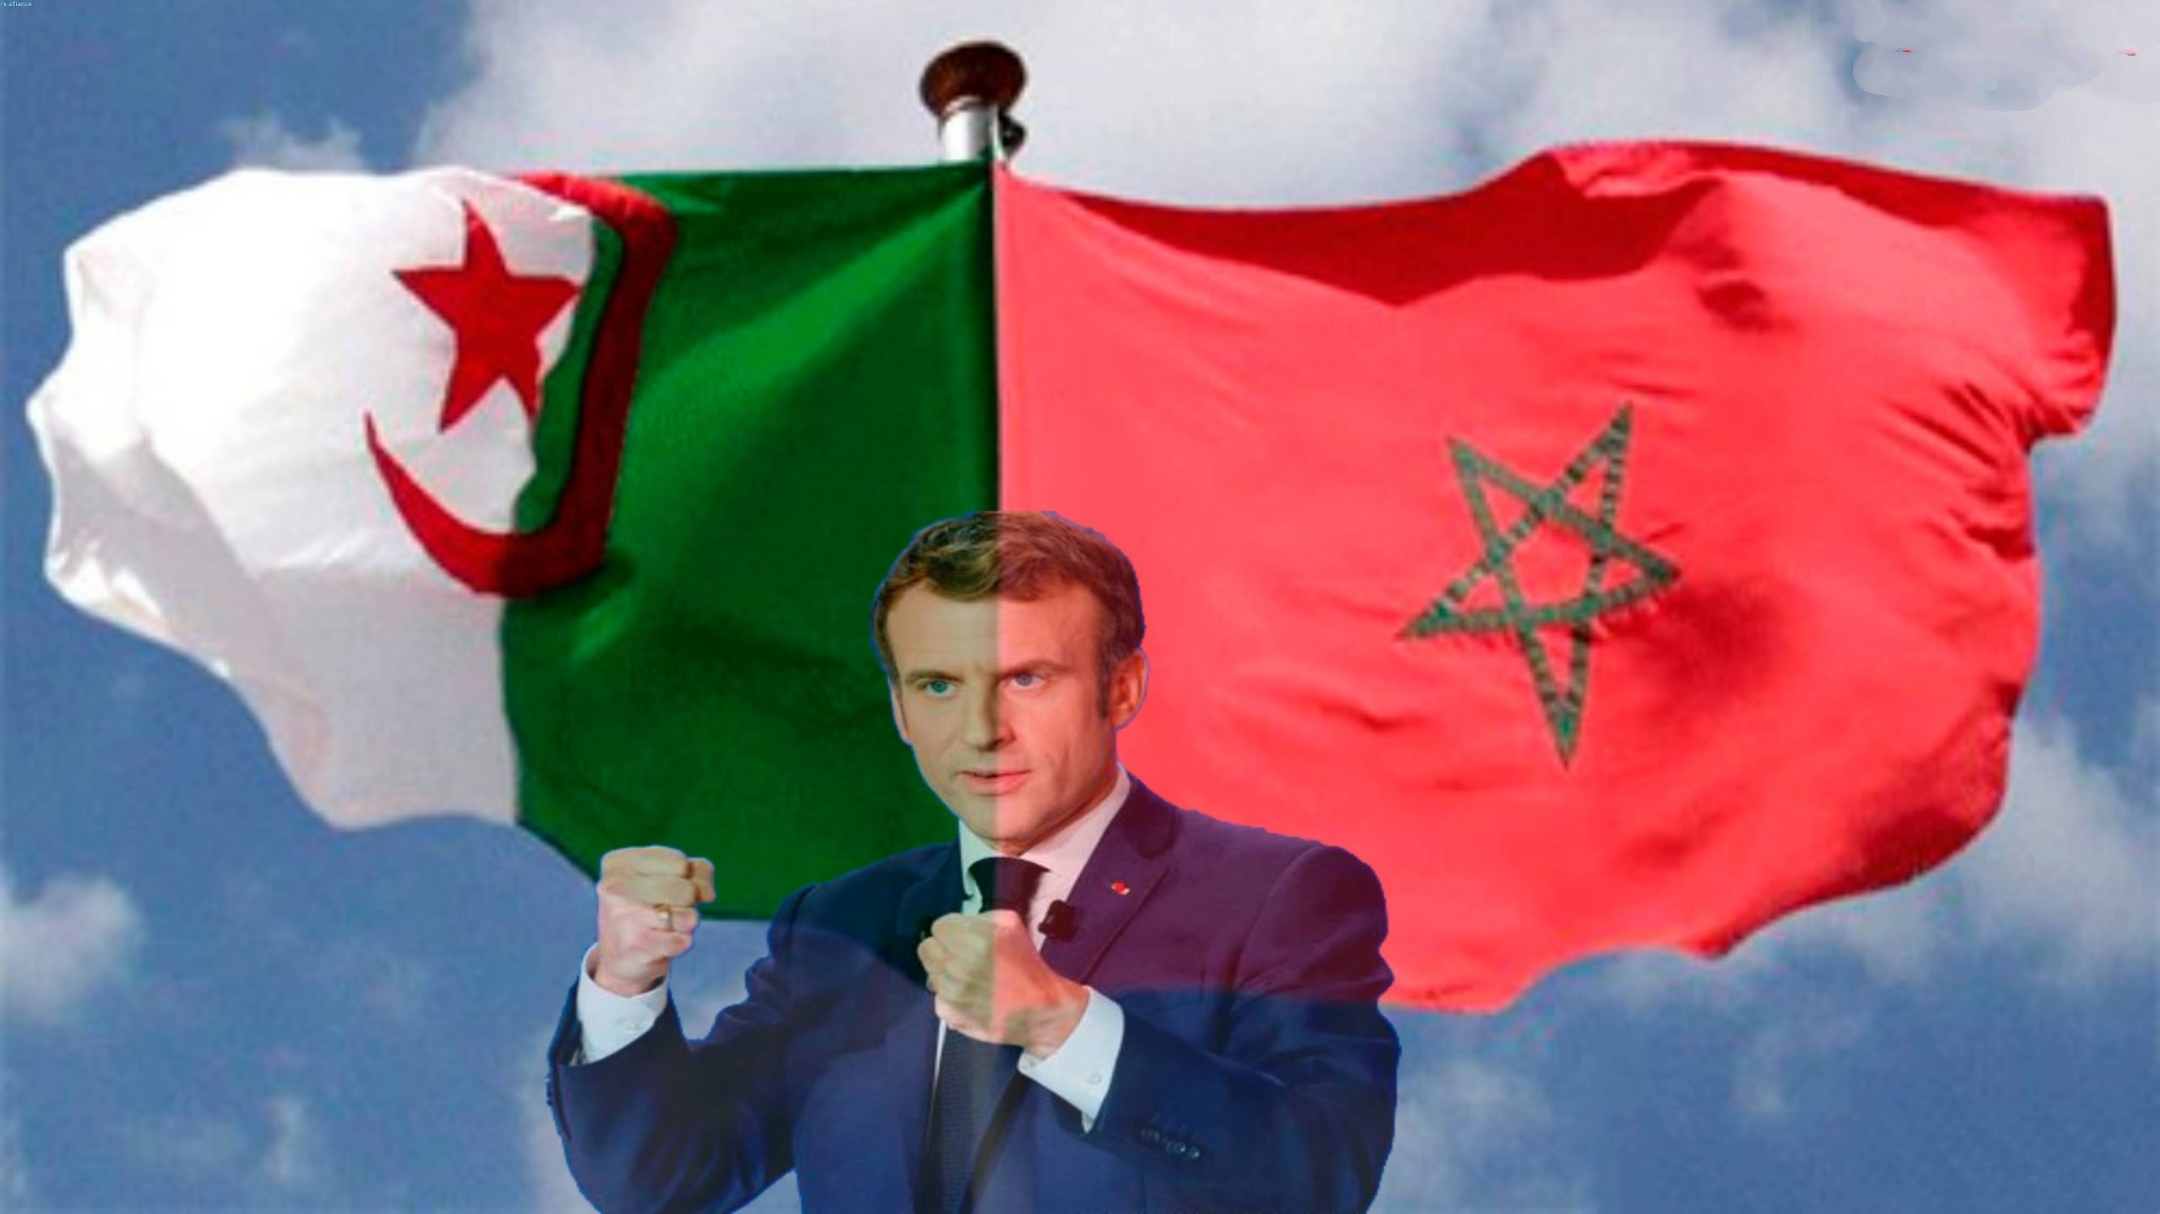 الدبلوماسية الفرنسية تلعب على وتر البحث المتواصل عن إمدادات الغاز الجزائري وكسب المزيد من الطاقة المغربية ؟